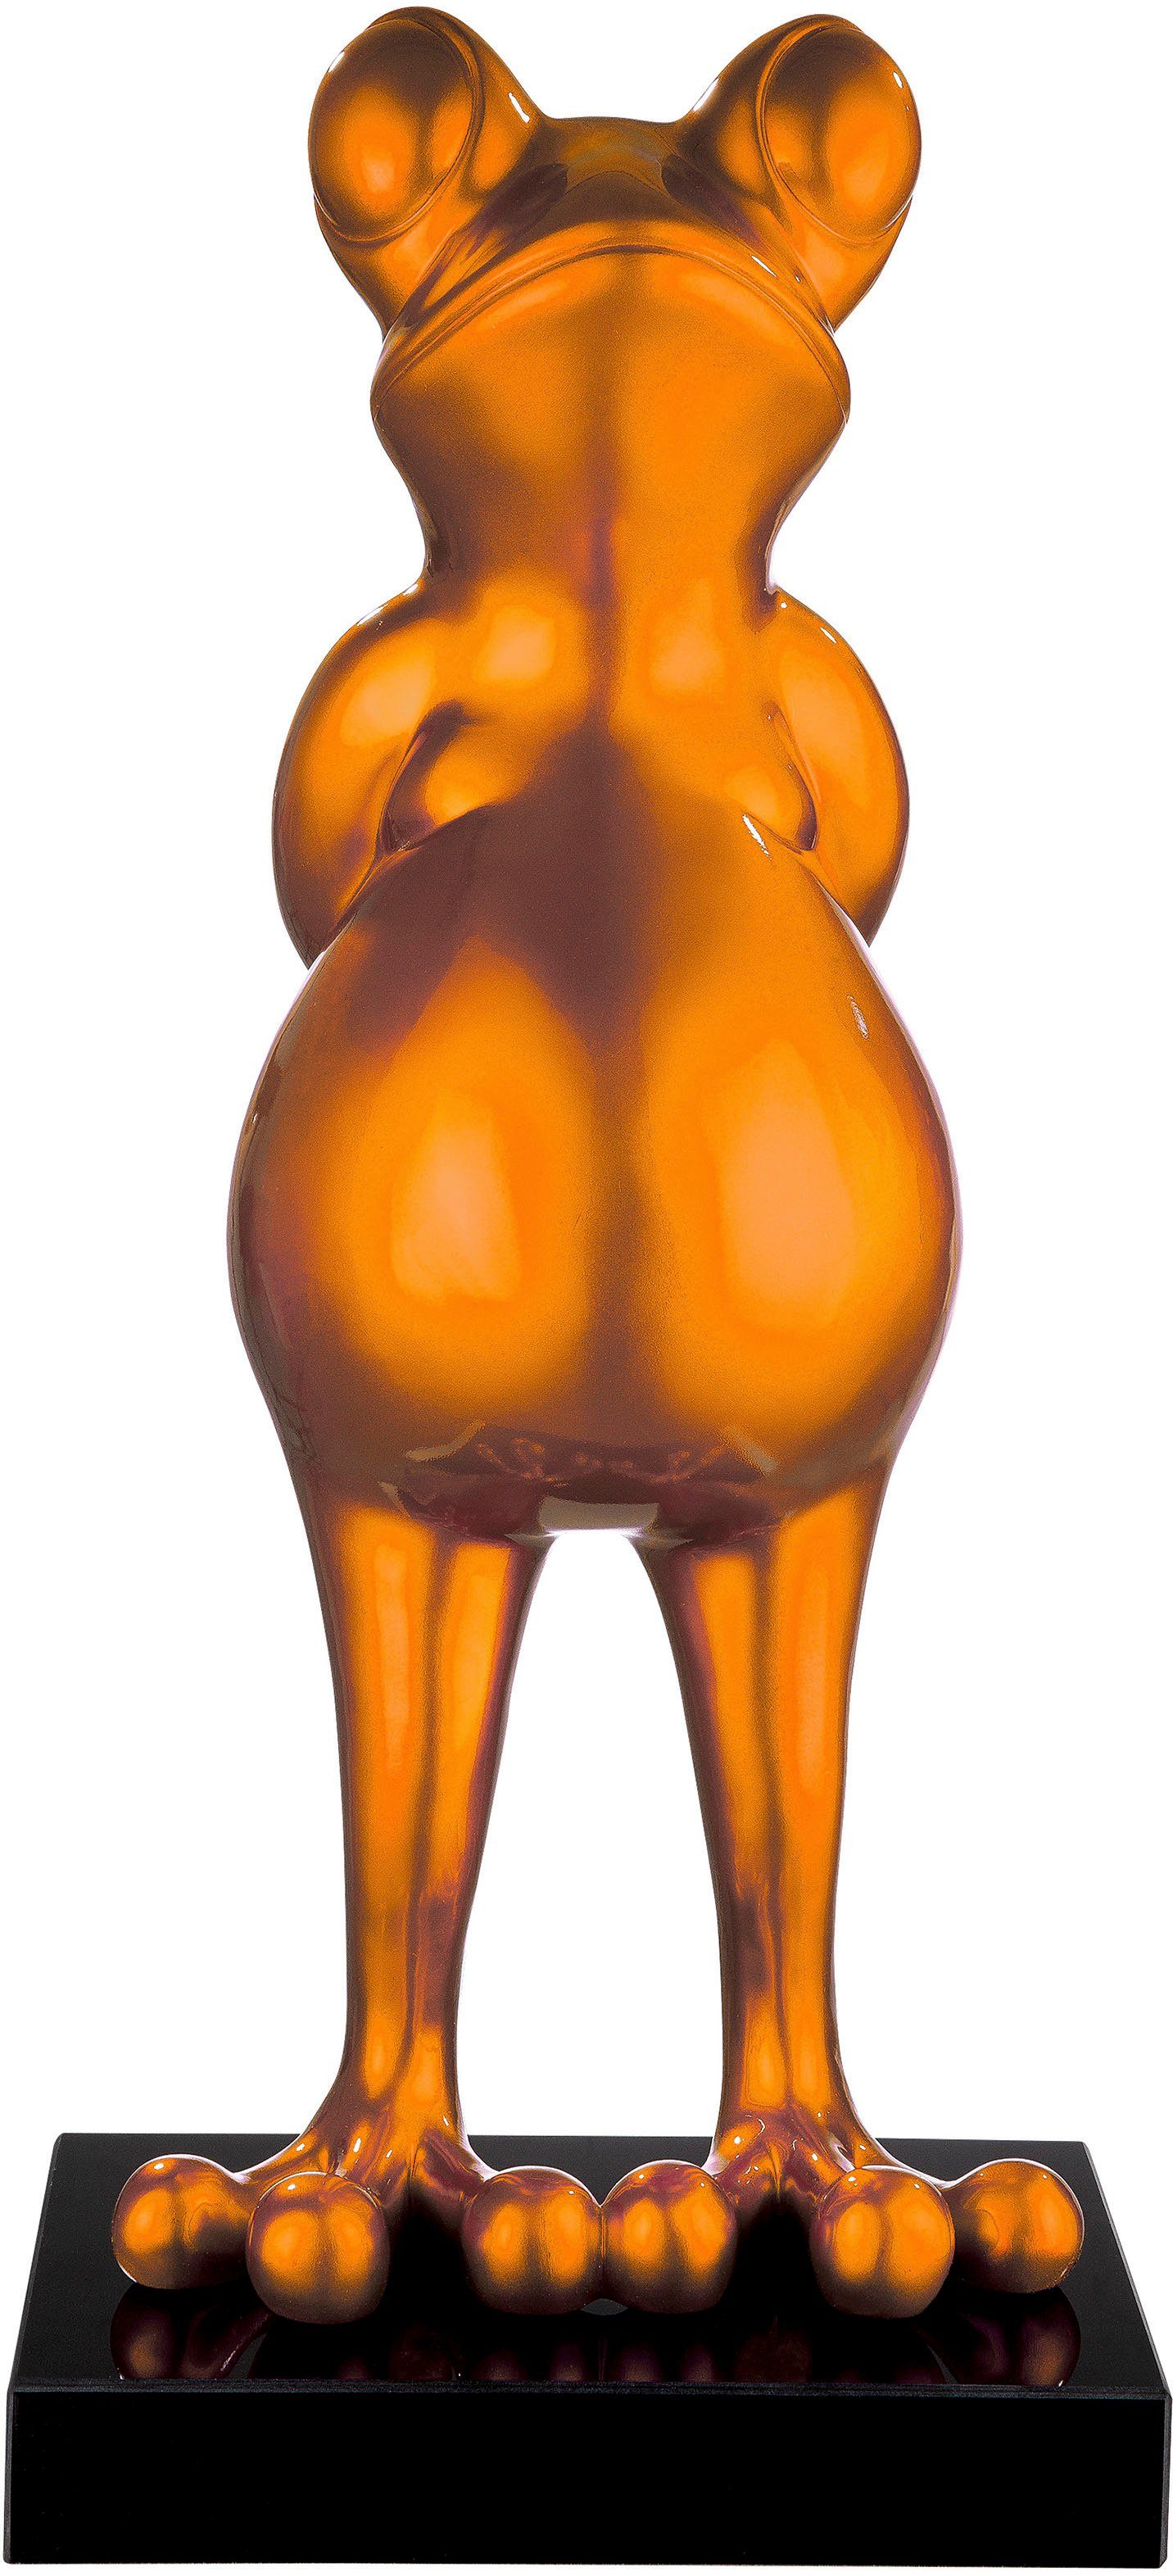 by Gilde Tierfigur Casablanca St) (1 Skulptur orange Frosch